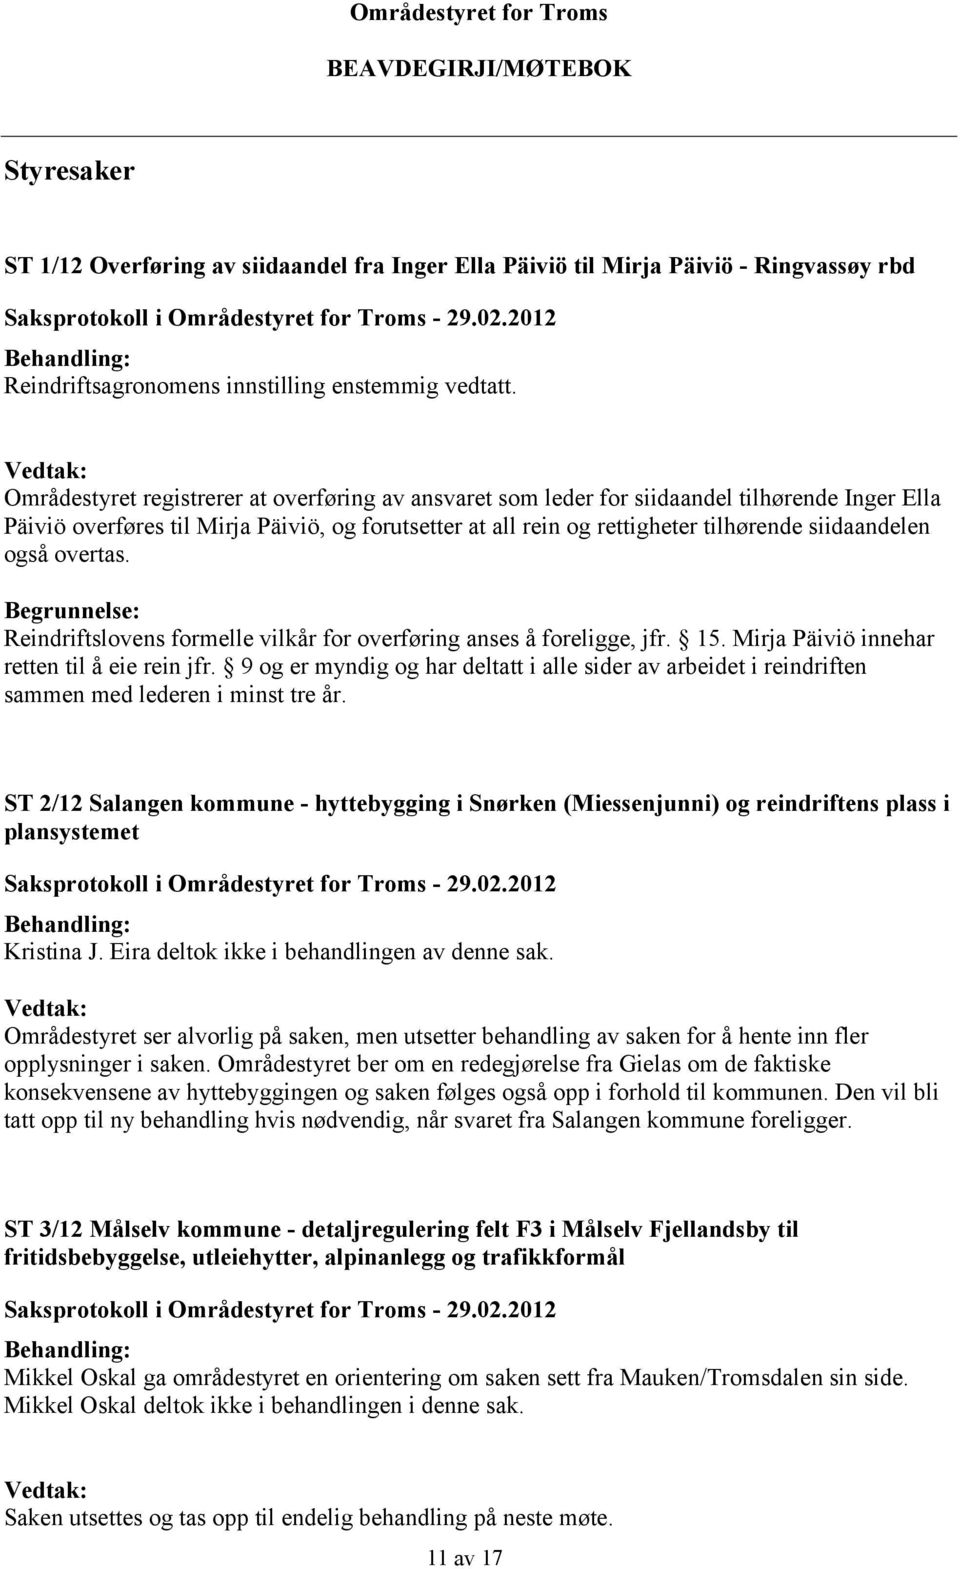 Vedtak: Områdestyret registrerer at overføring av ansvaret som leder for siidaandel tilhørende Inger Ella Päiviö overføres til Mirja Päiviö, og forutsetter at all rein og rettigheter tilhørende